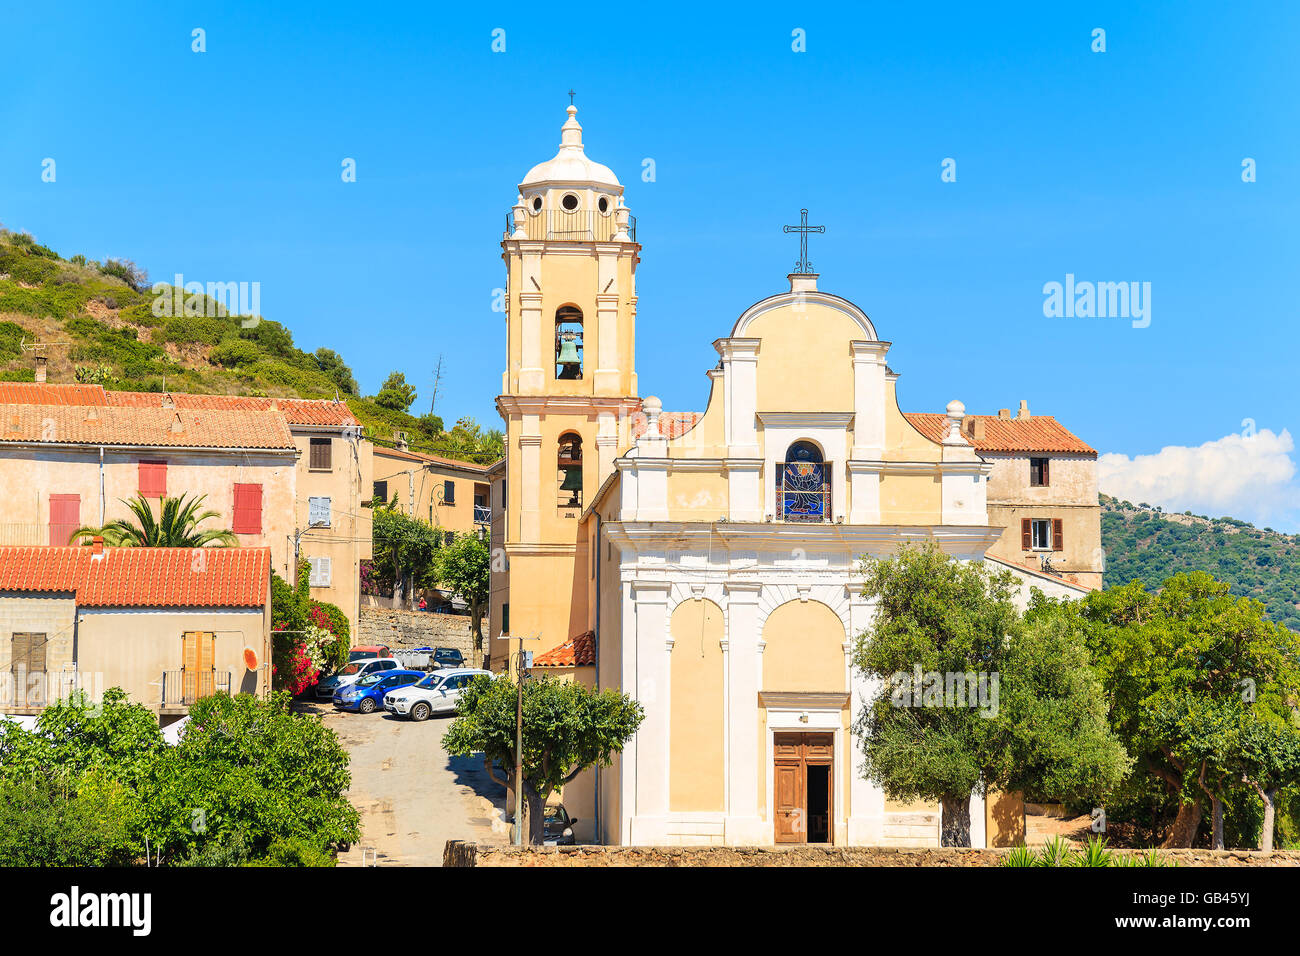 Église typique sur l'île de Corse Cargese village, France Banque D'Images